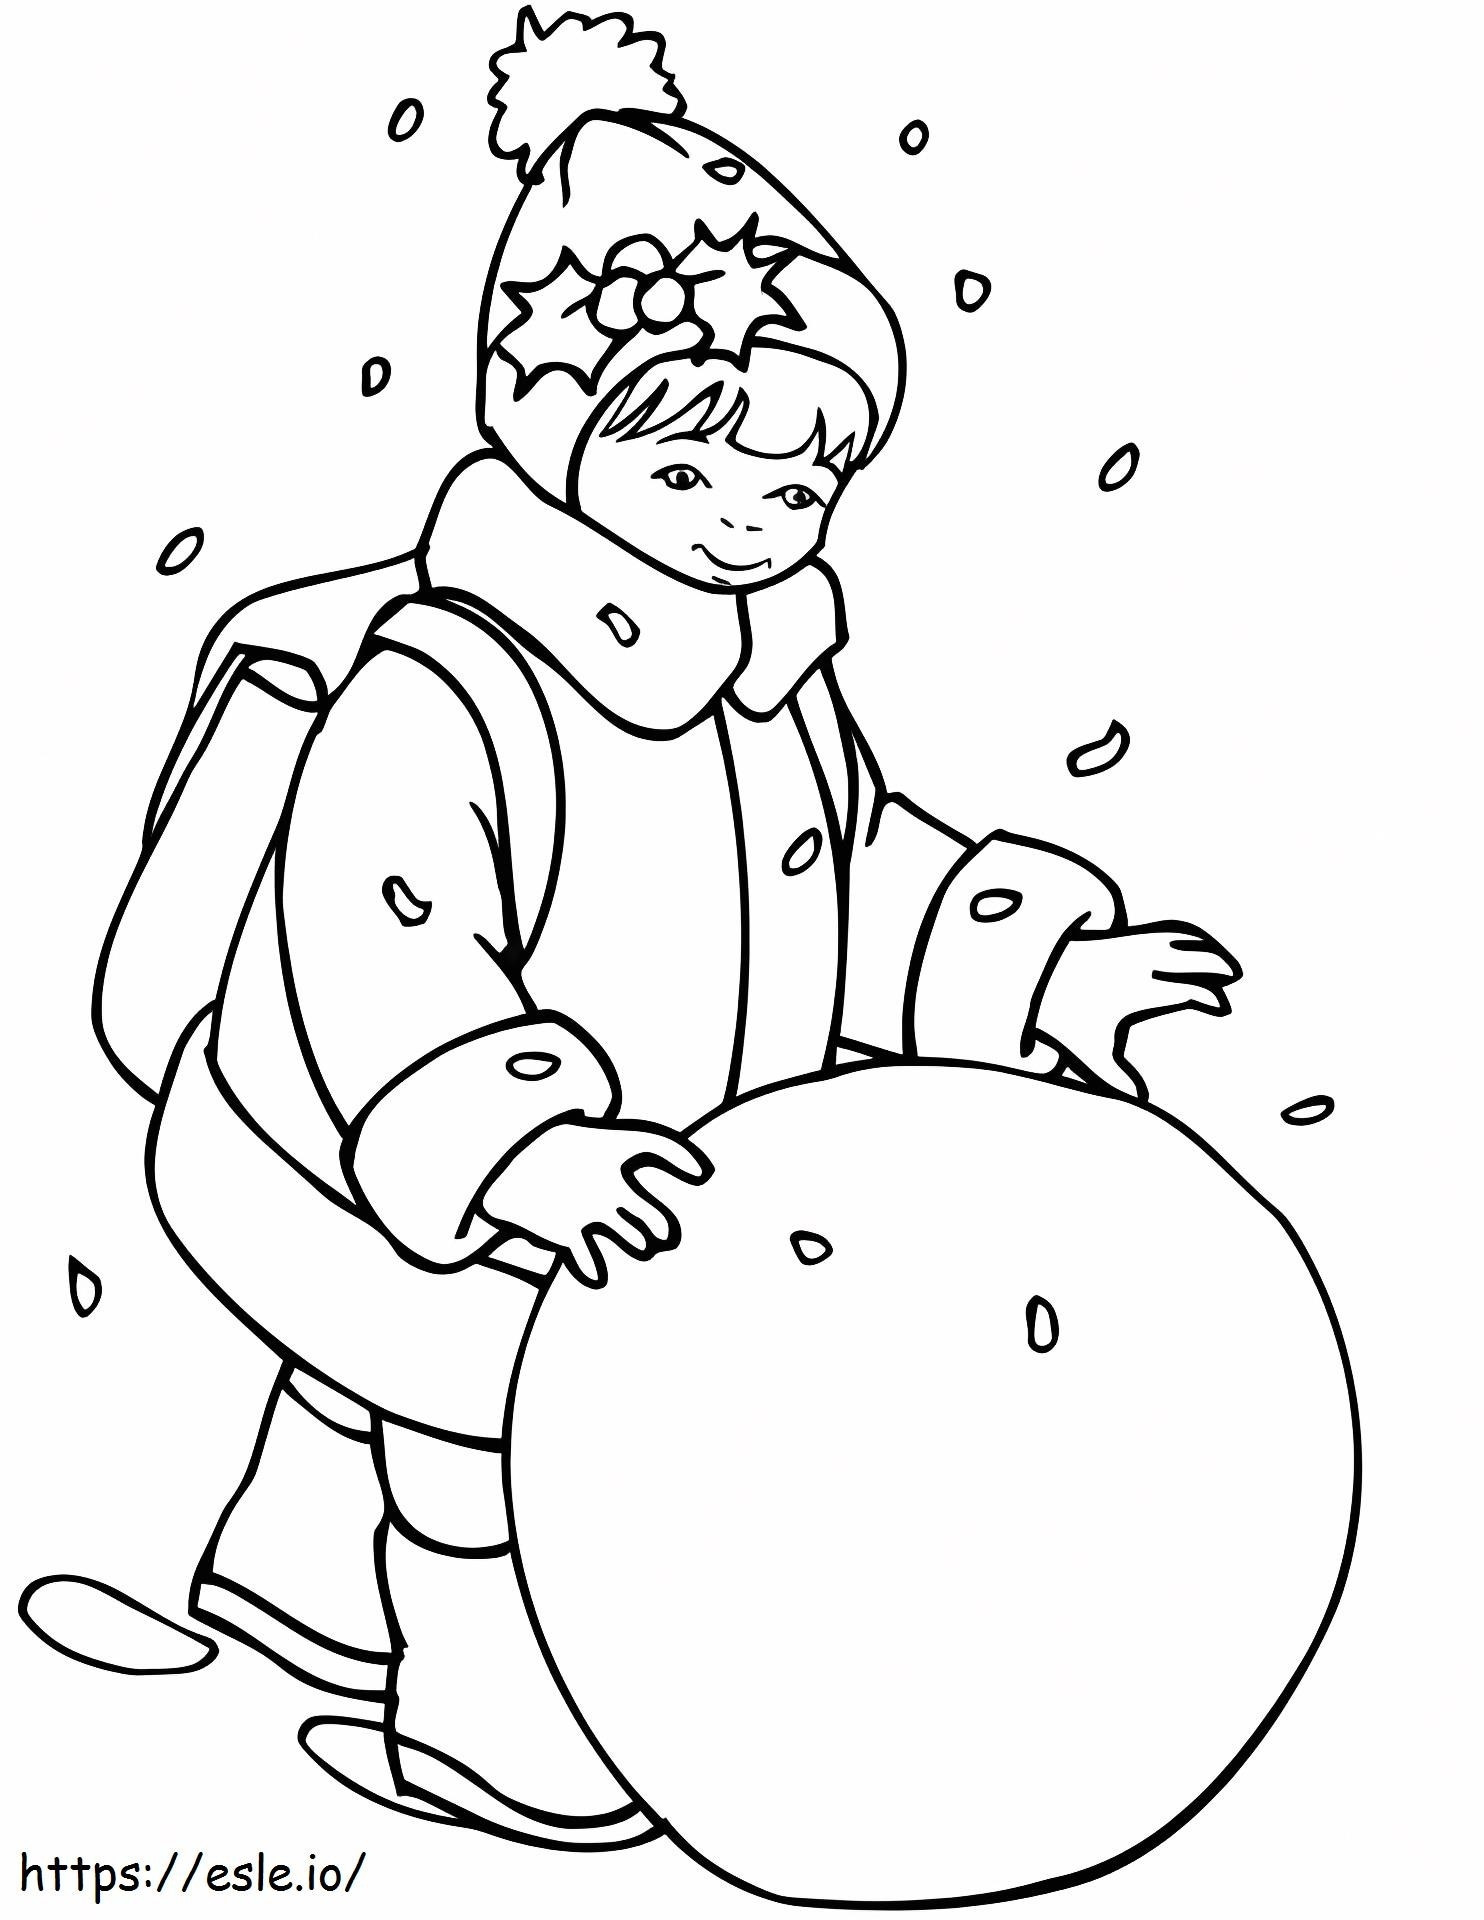 1533006898 Menina rolando uma bola de neve A4 para colorir